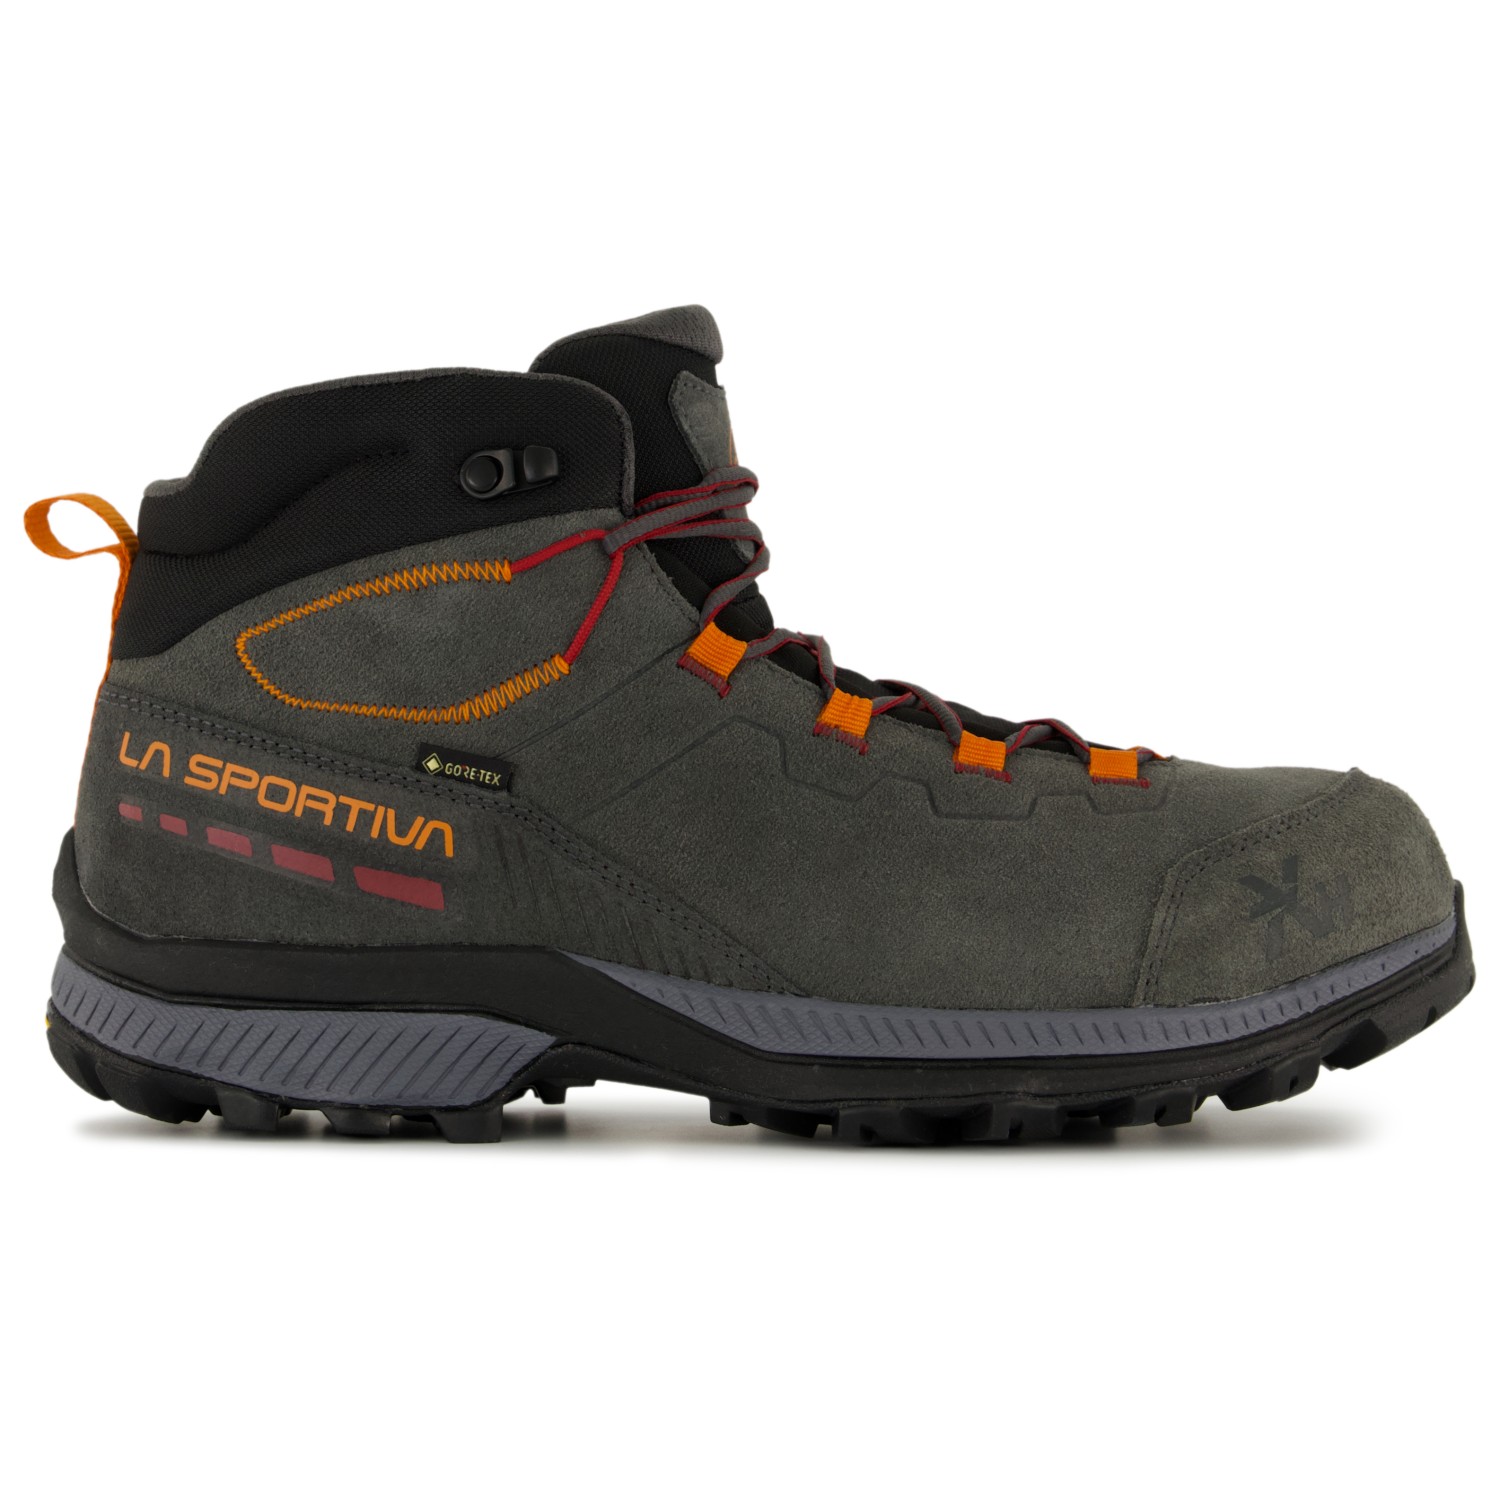 Ботинки для прогулки La Sportiva TX Hike Mid Leather GTX, цвет Carbon/Hawaiian Sun обувь tx canyon мужская la sportiva черный желтый